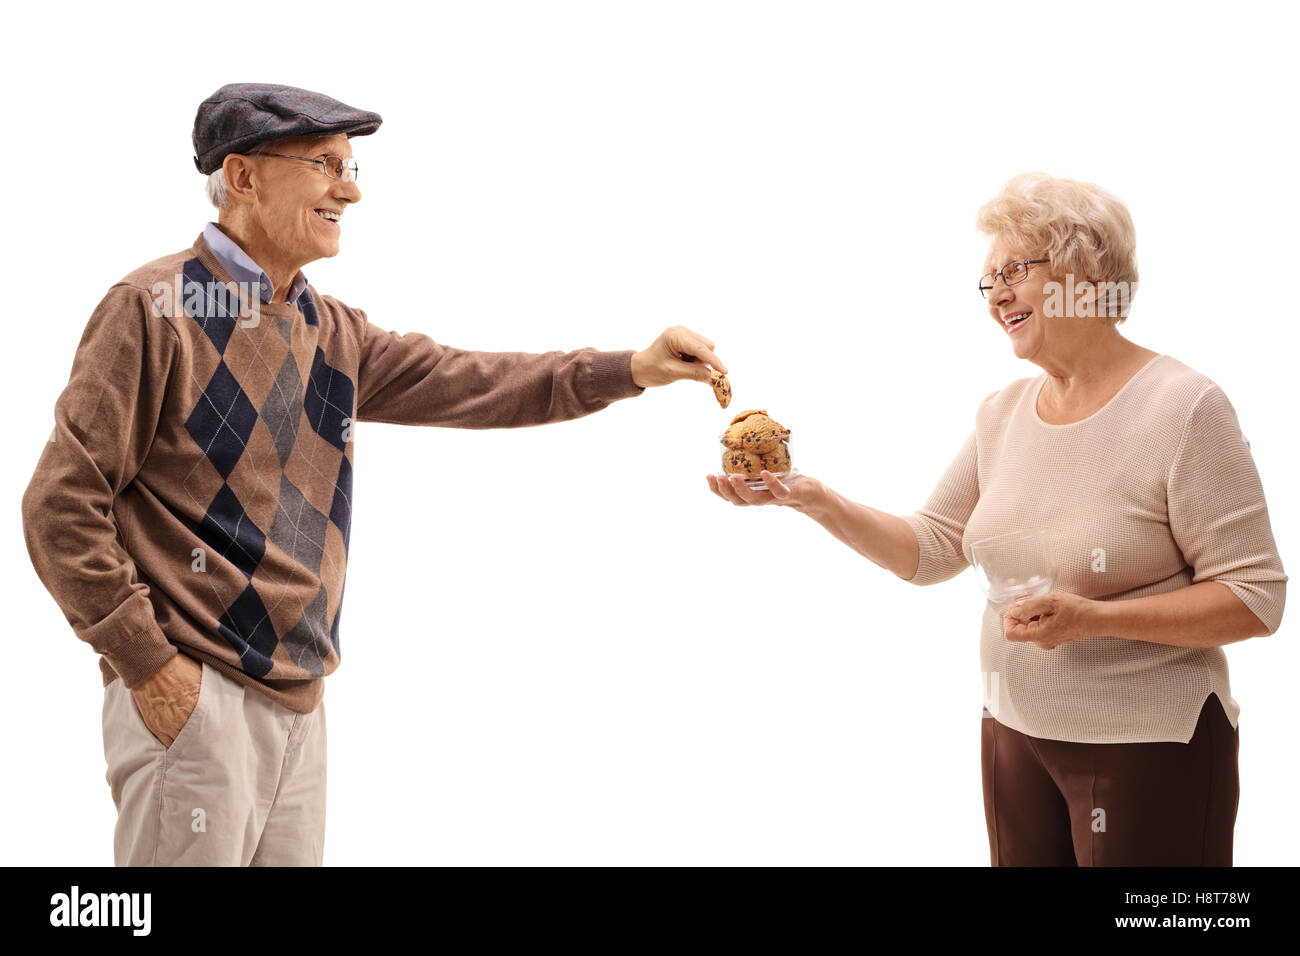 Uomo maturo prendendo un cookie da una donna matura con un vaso isolato su sfondo bianco Foto Stock